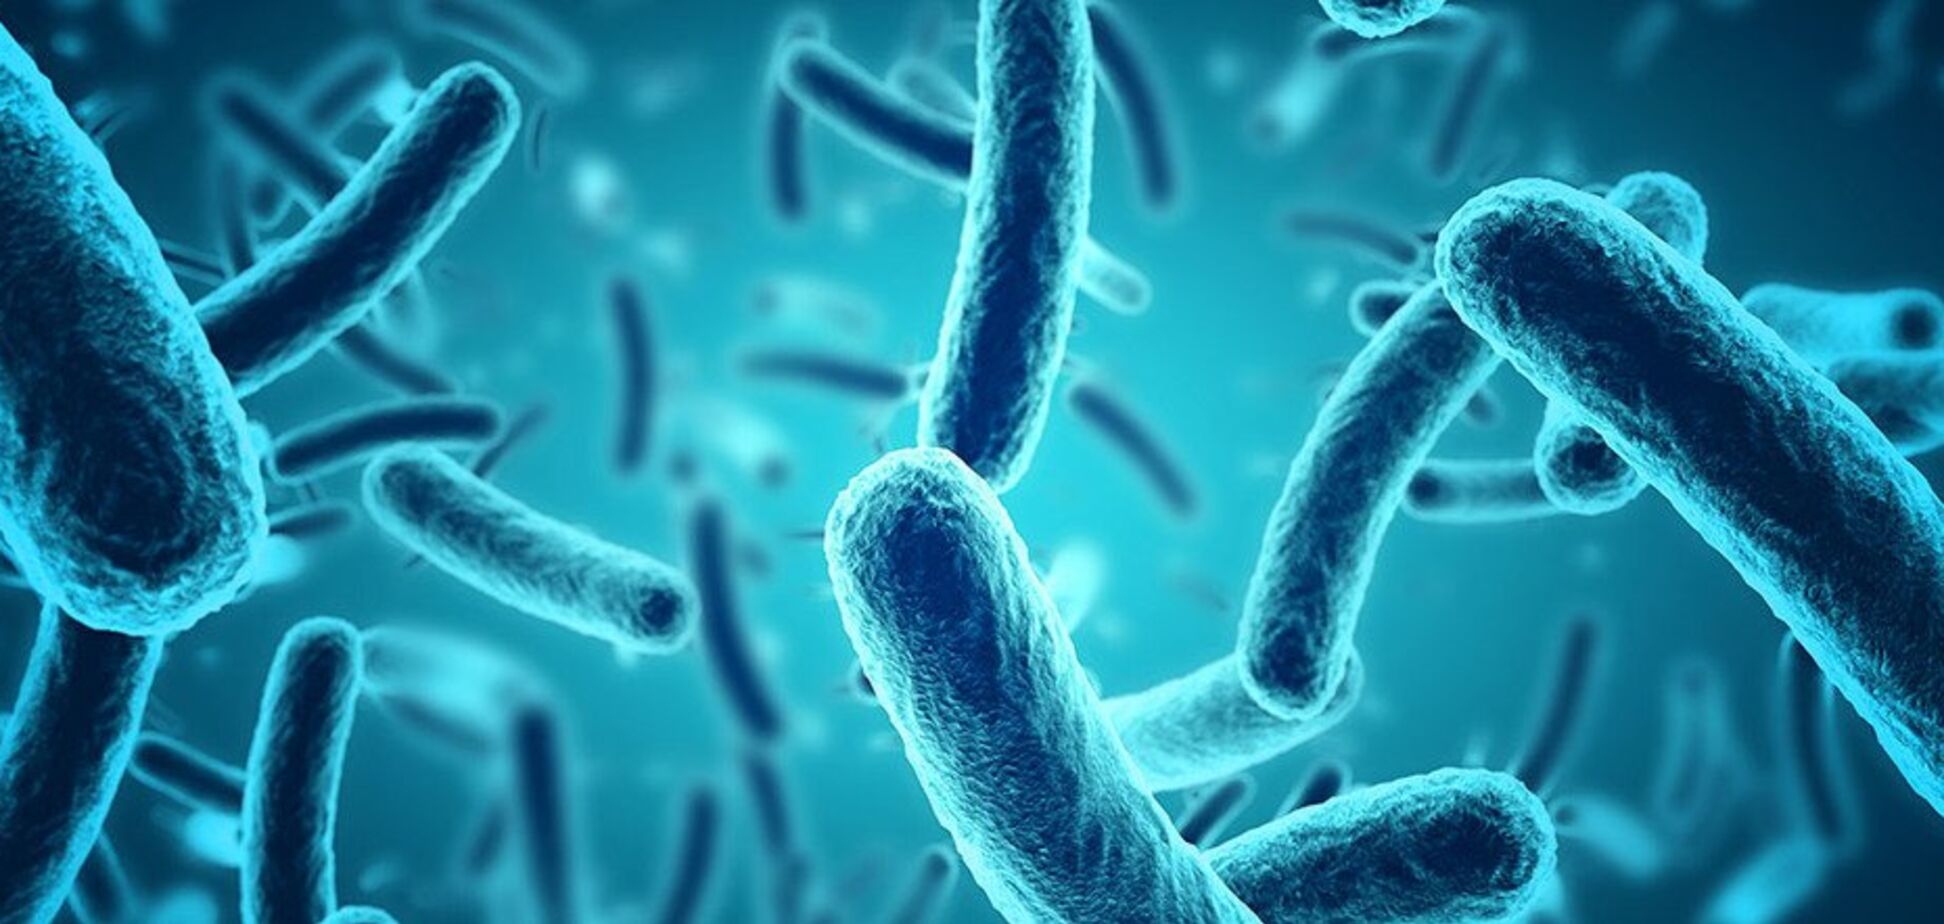 Меняют форму и поведение: ученые обнаружили бактерию-'зомби'